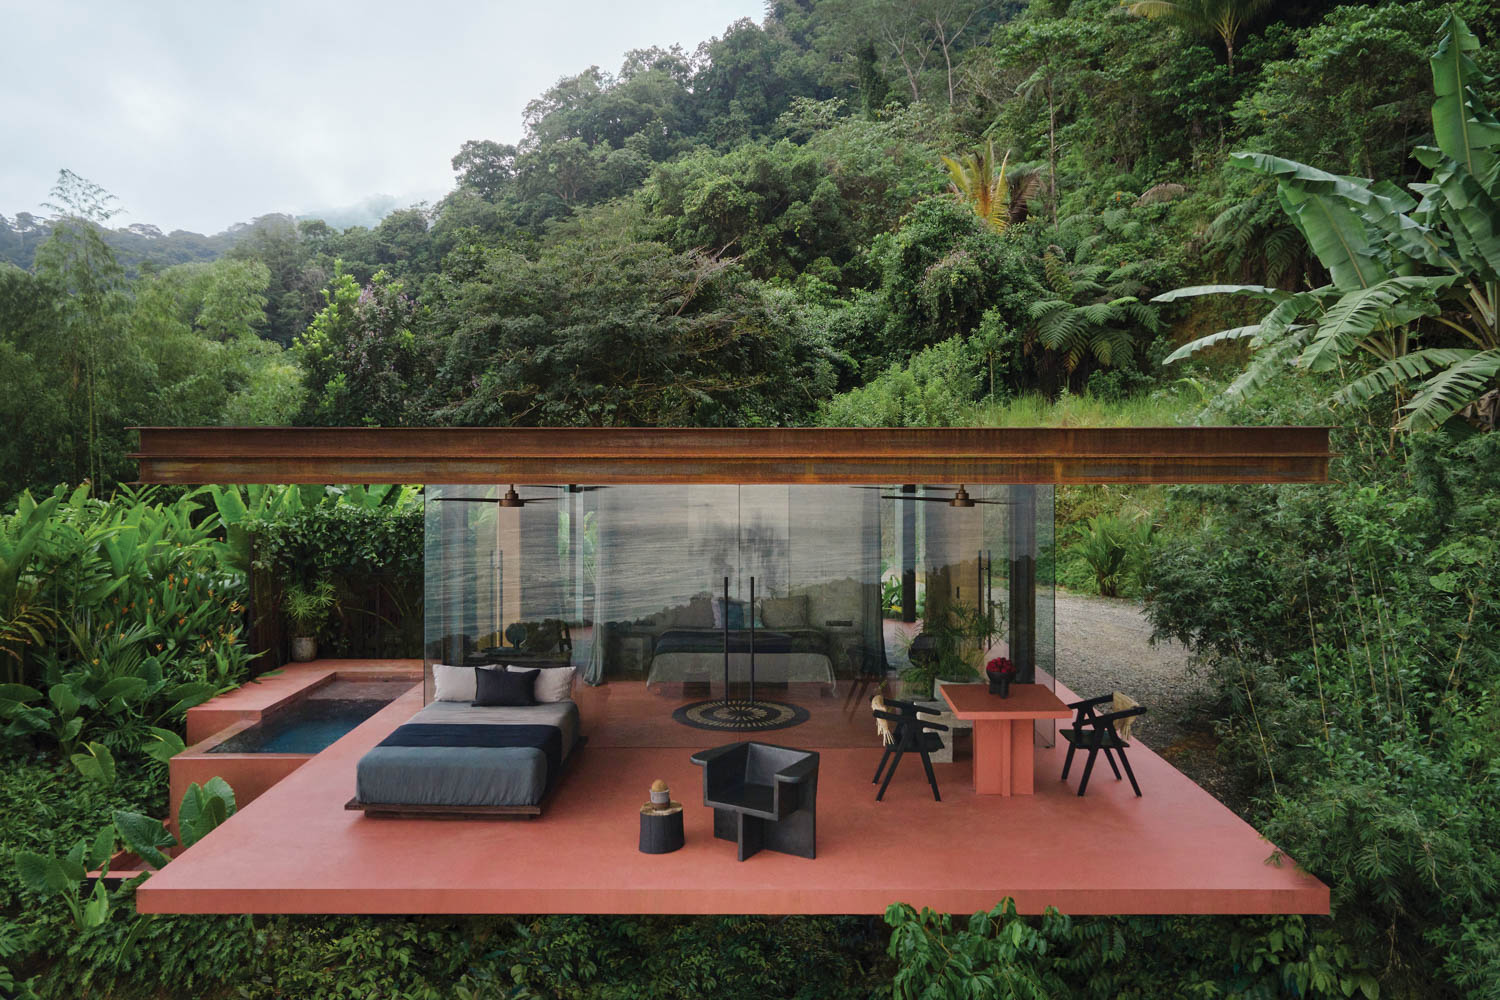 a rental villa in the Costa Rica jungle